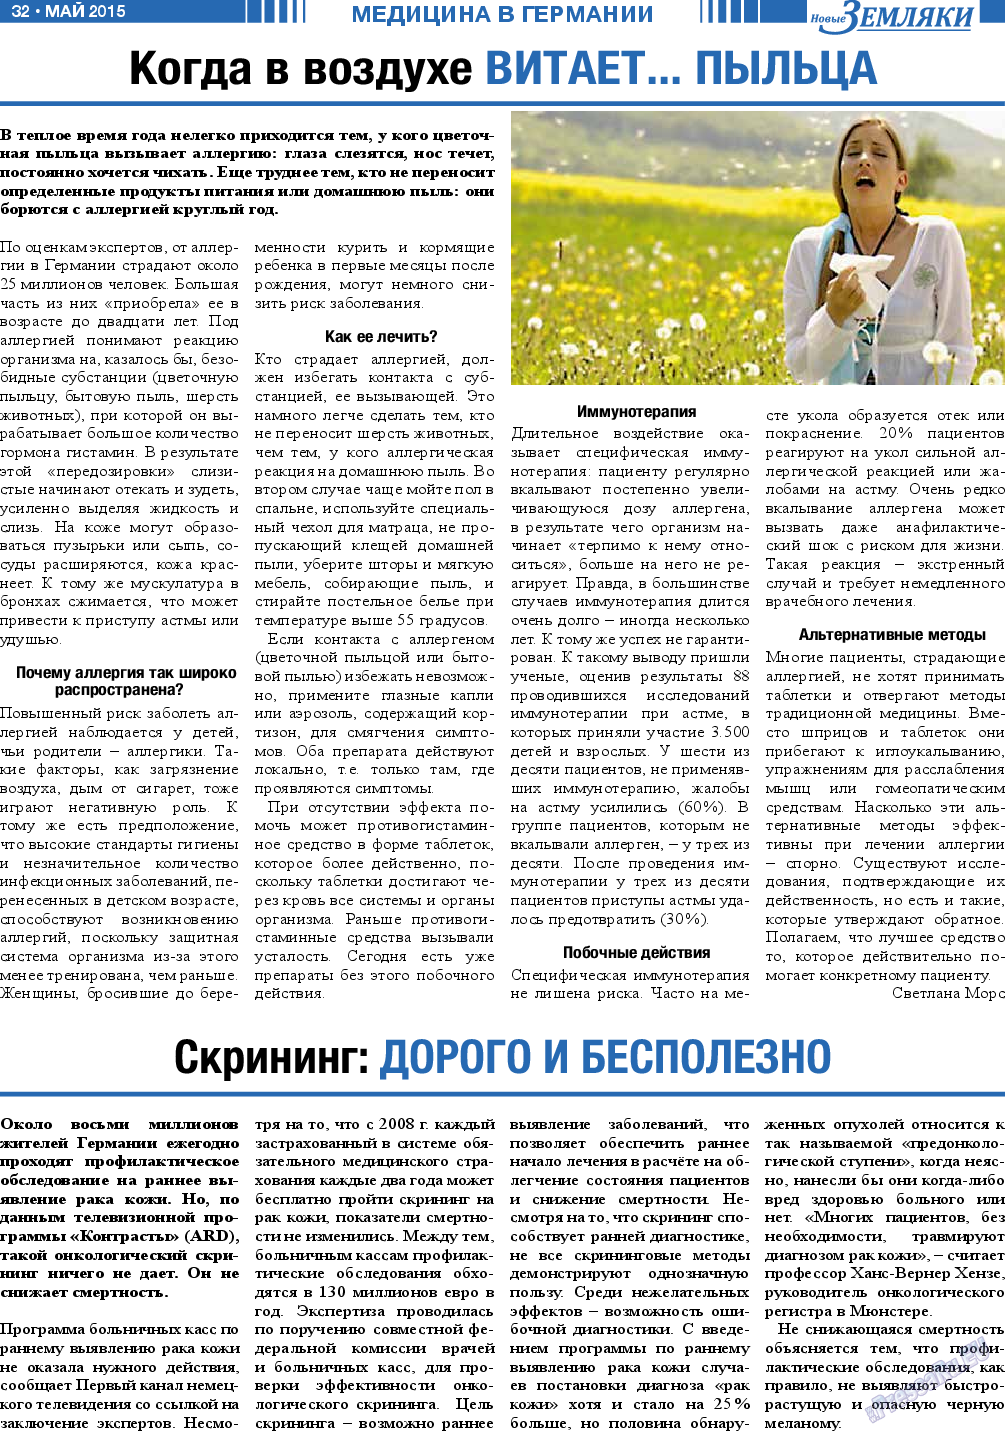 Новые Земляки, газета. 2015 №5 стр.32